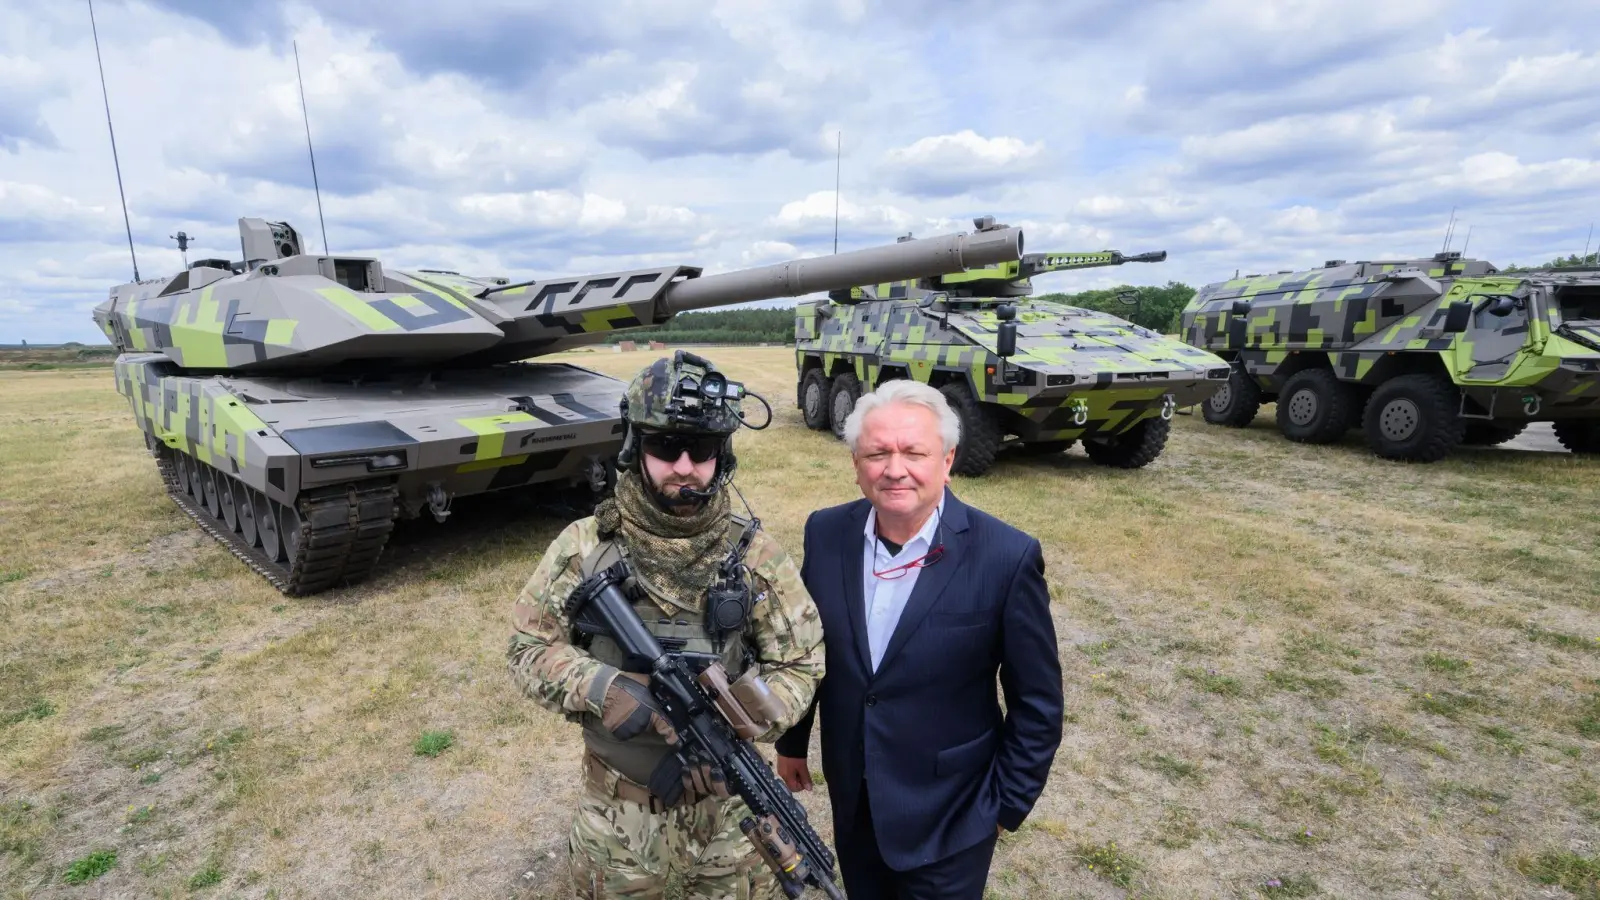 Der Rheinmetall-Vorstandsvorsitzende Armin Papperger (r) und ein Soldat stehen vor einem Kampfpanzer Panther KF51 (l) des Rüstungskonzerns Rheinmetall. (Foto: Julian Stratenschulte/dpa)